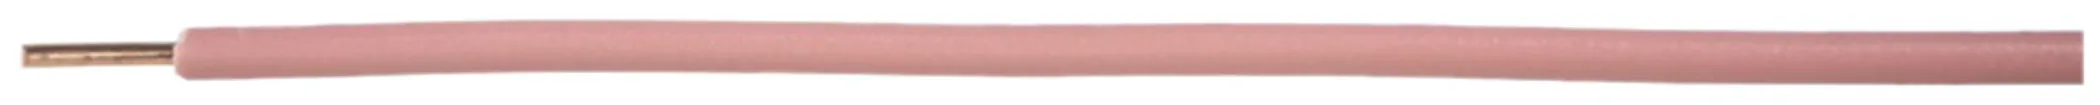 Filo N H07Z1-U senza alogeno 1.5mm² 450/750V rosa Cca 